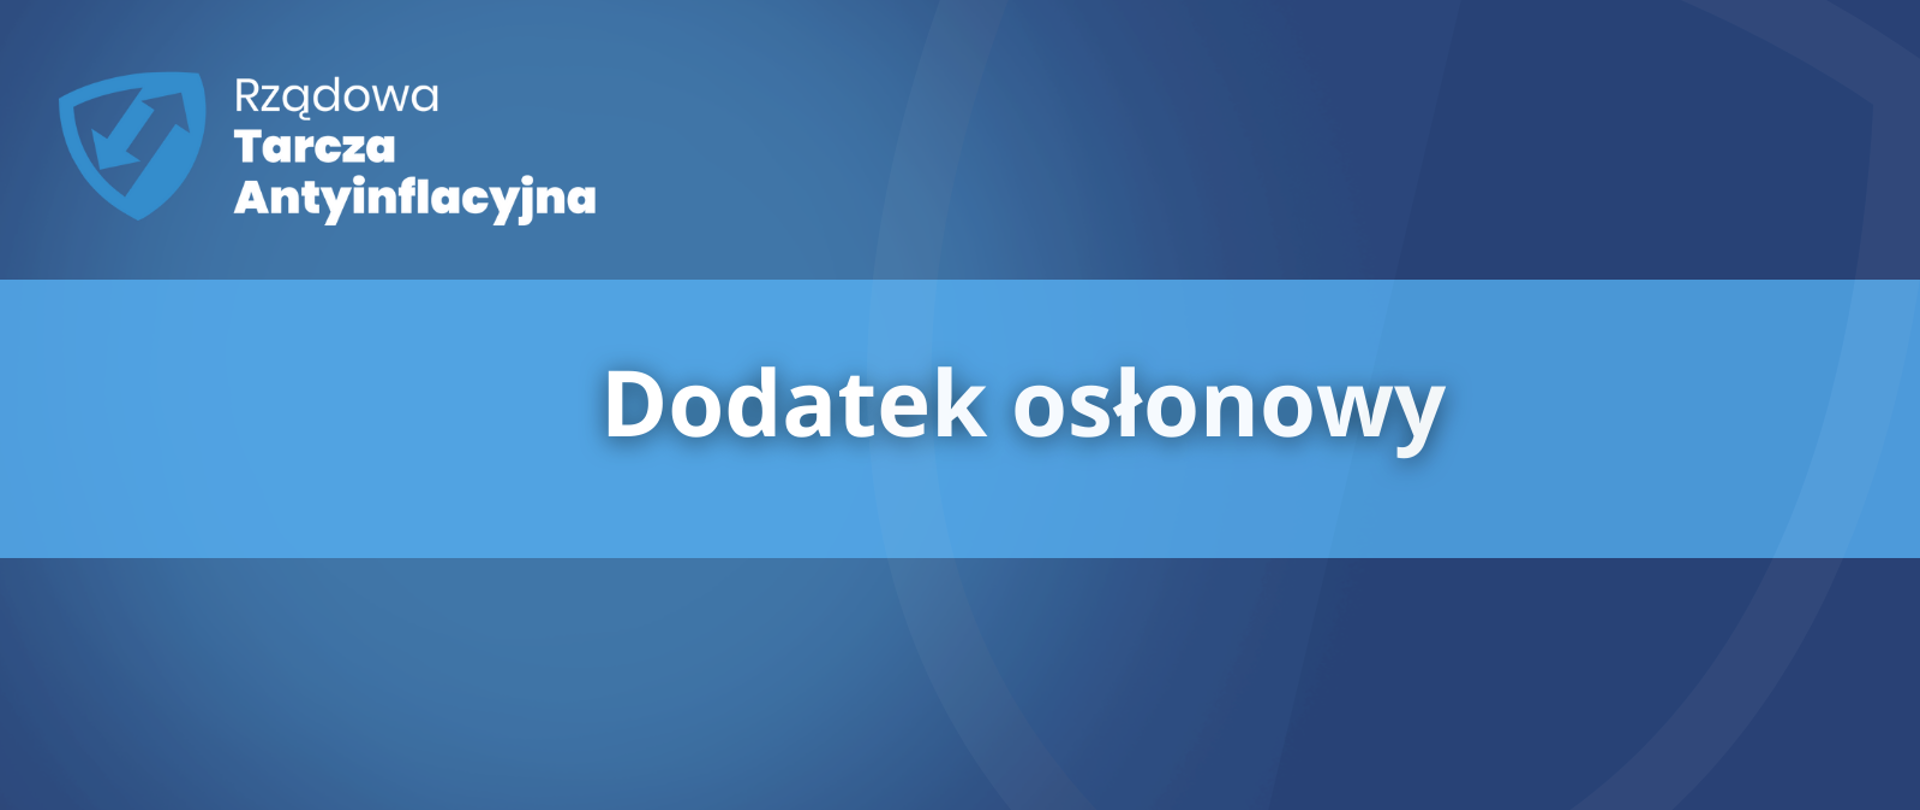 dodatek_oslonowy_logo